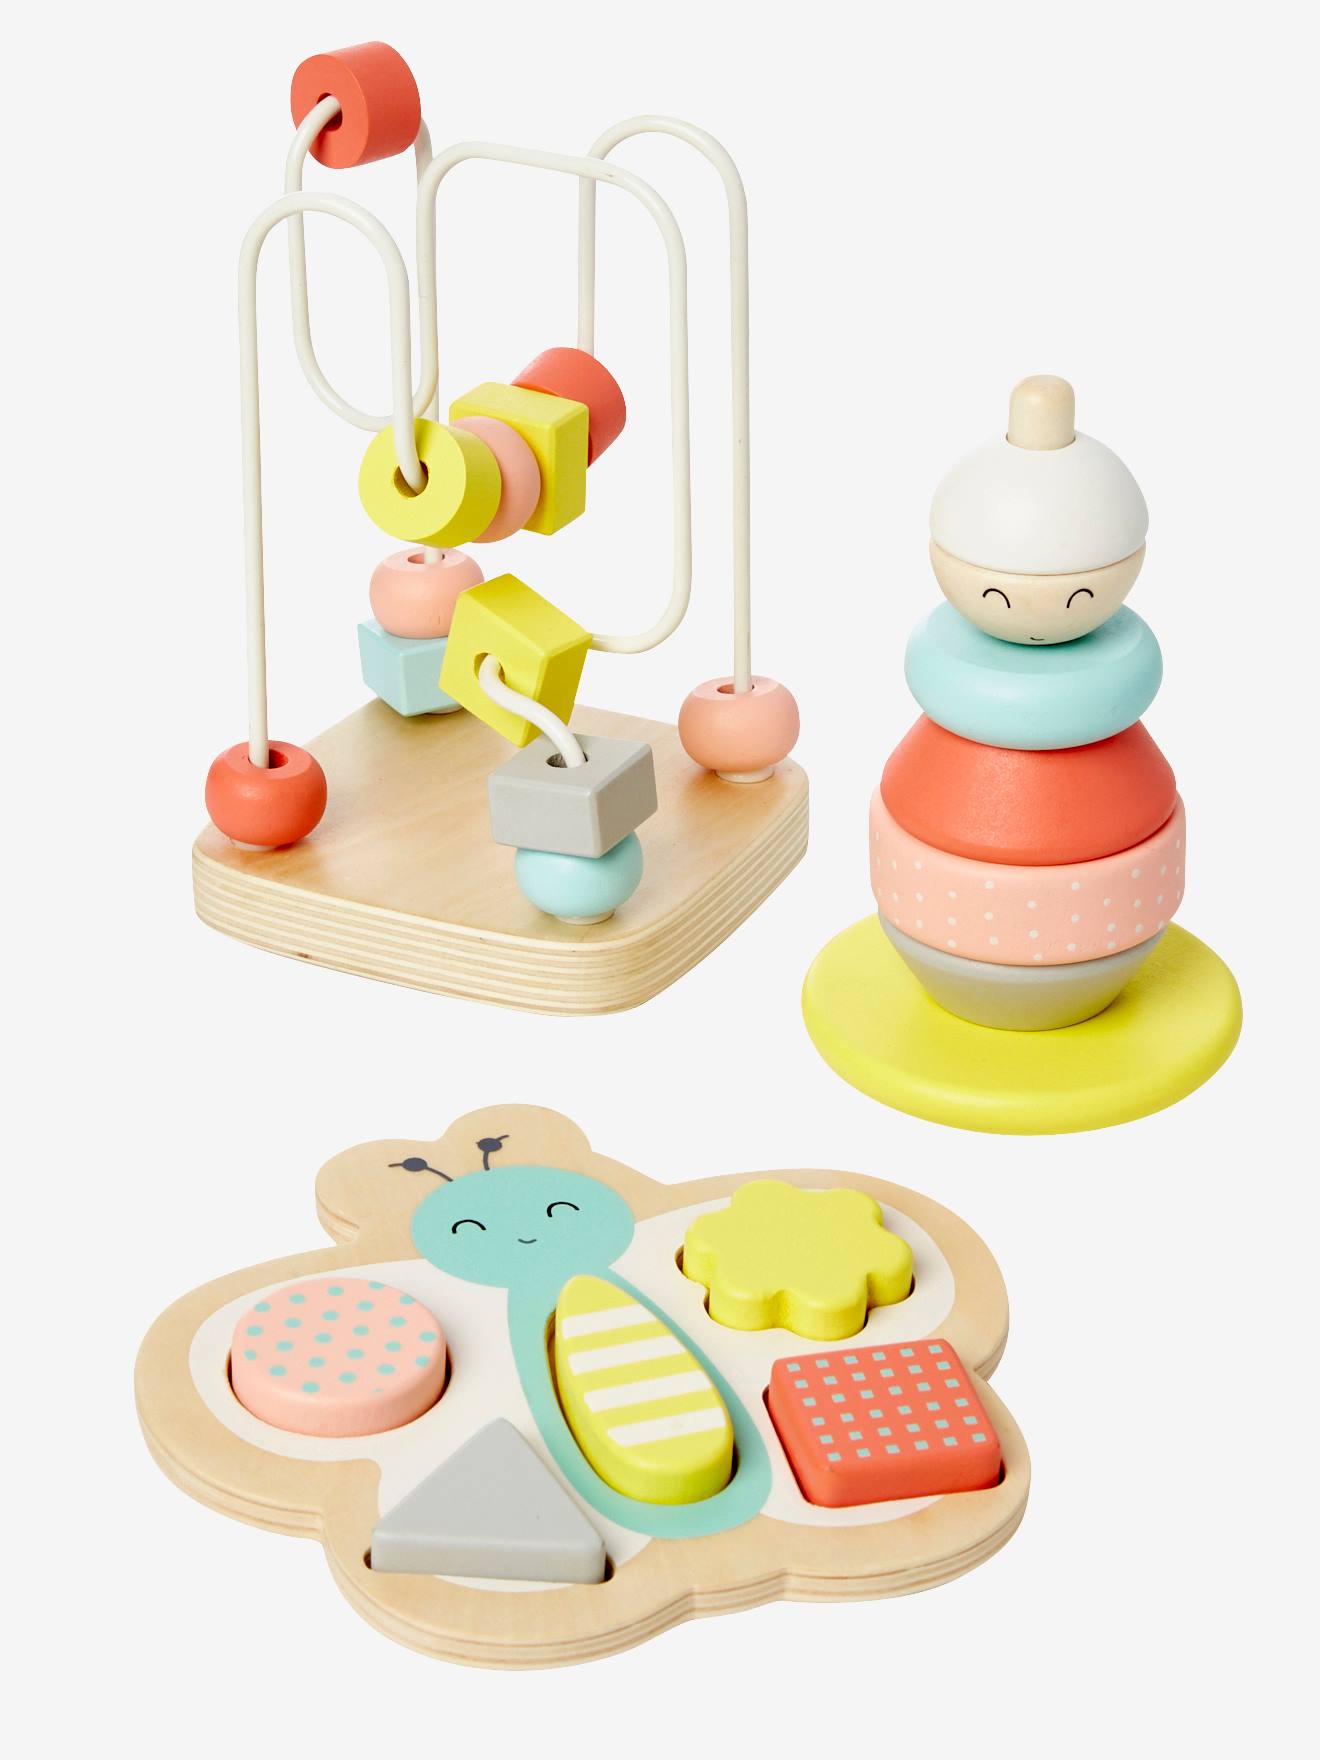 Le jouet simple - Coffret d'éveil avec trois jouets